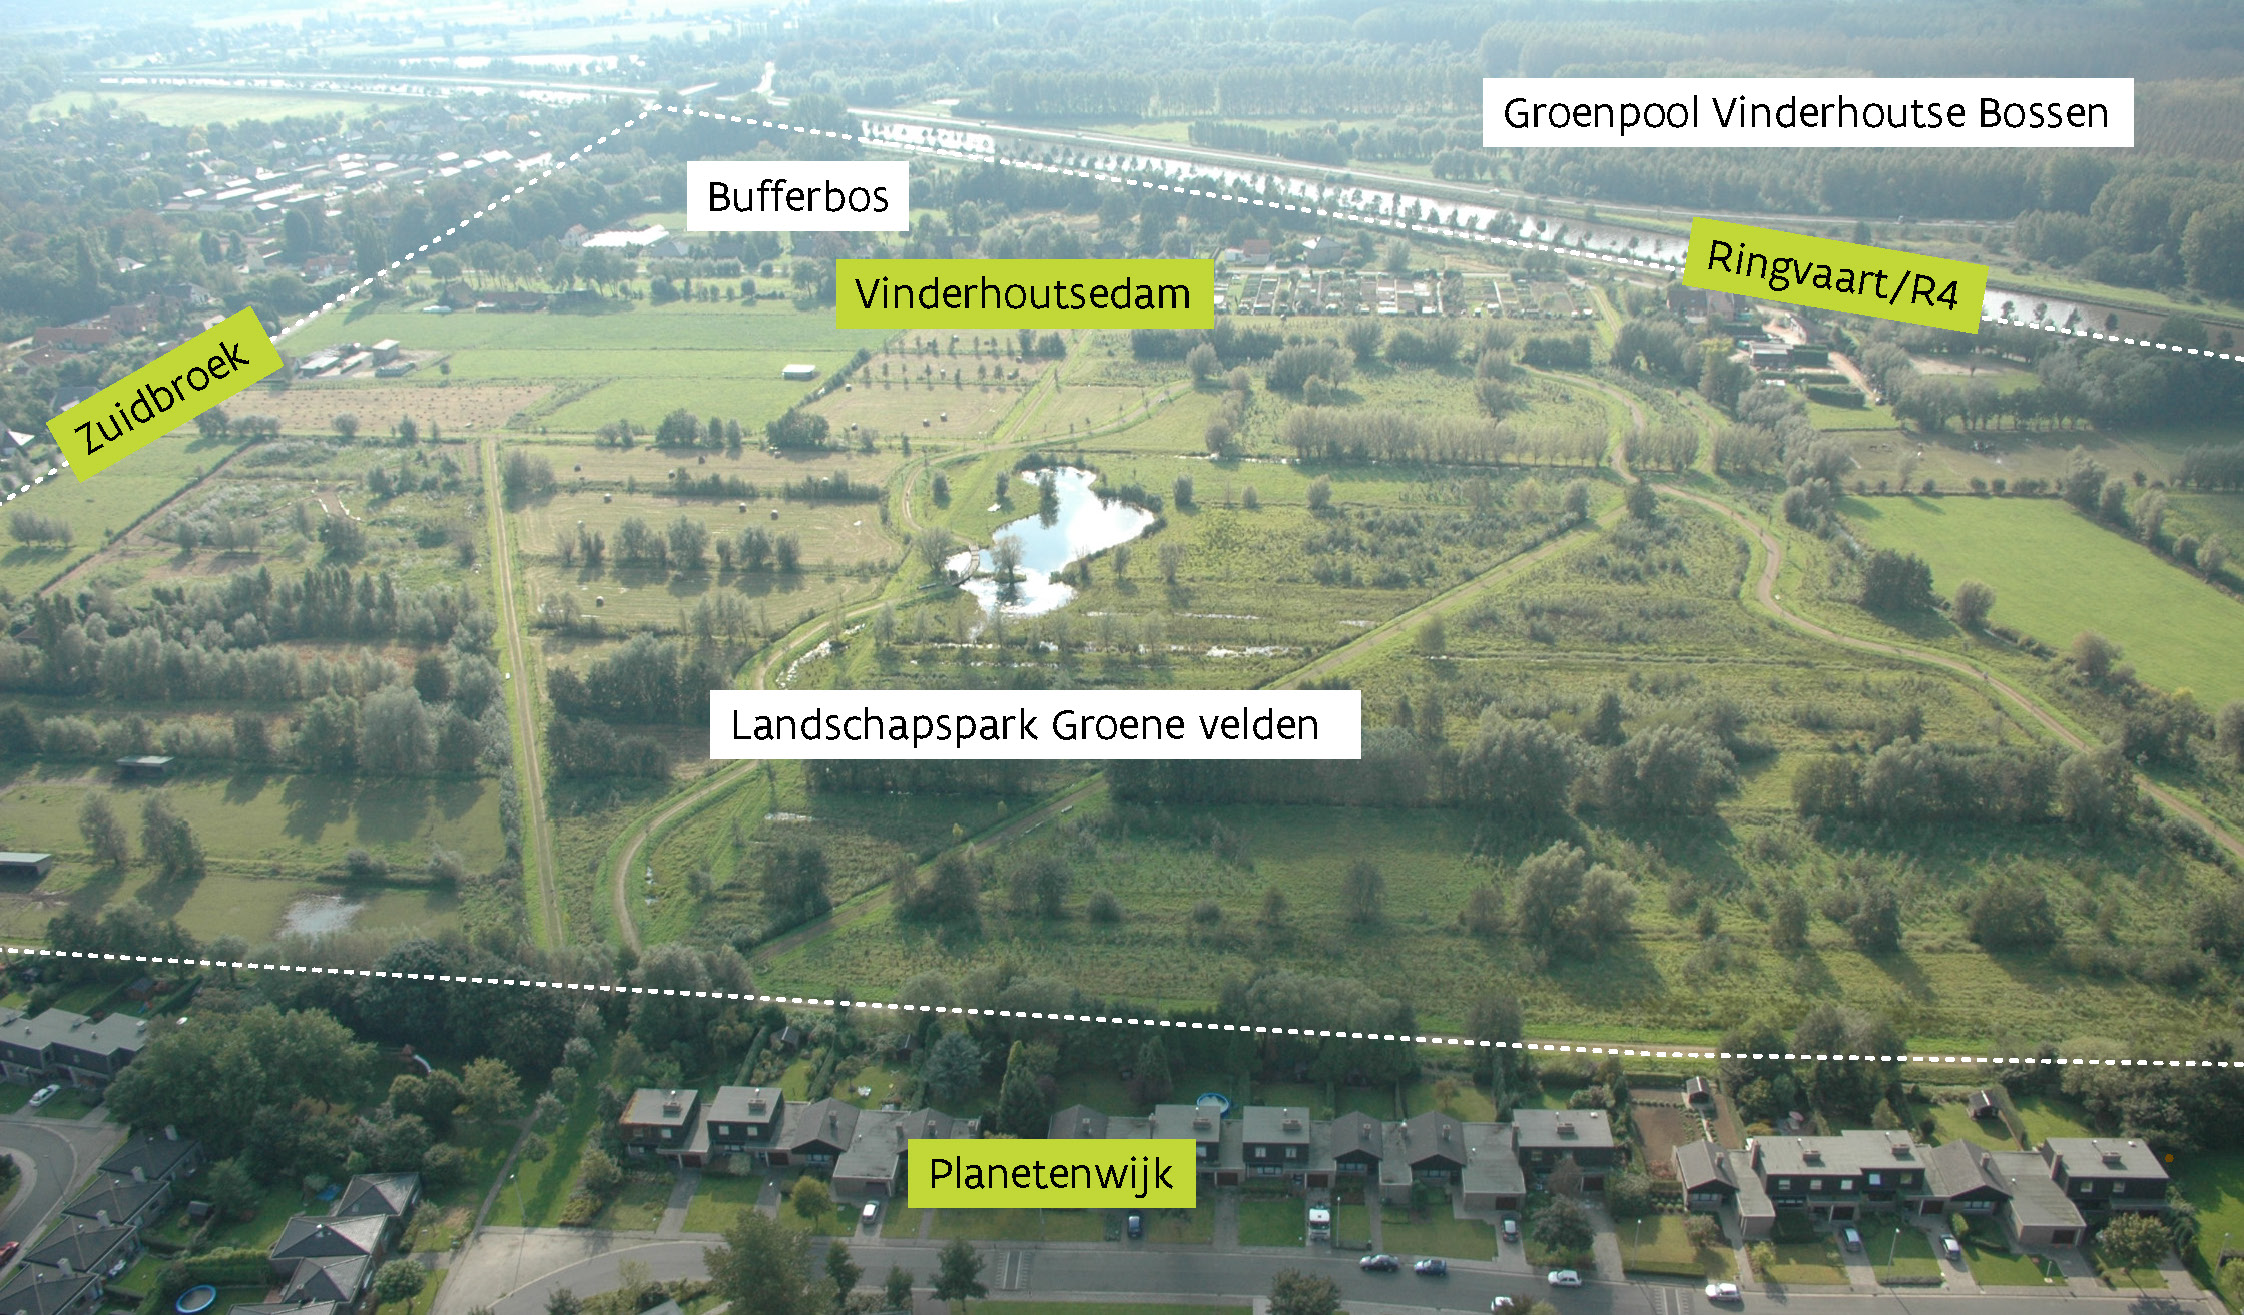 luchtfoto situering landschapspark in de omgeving